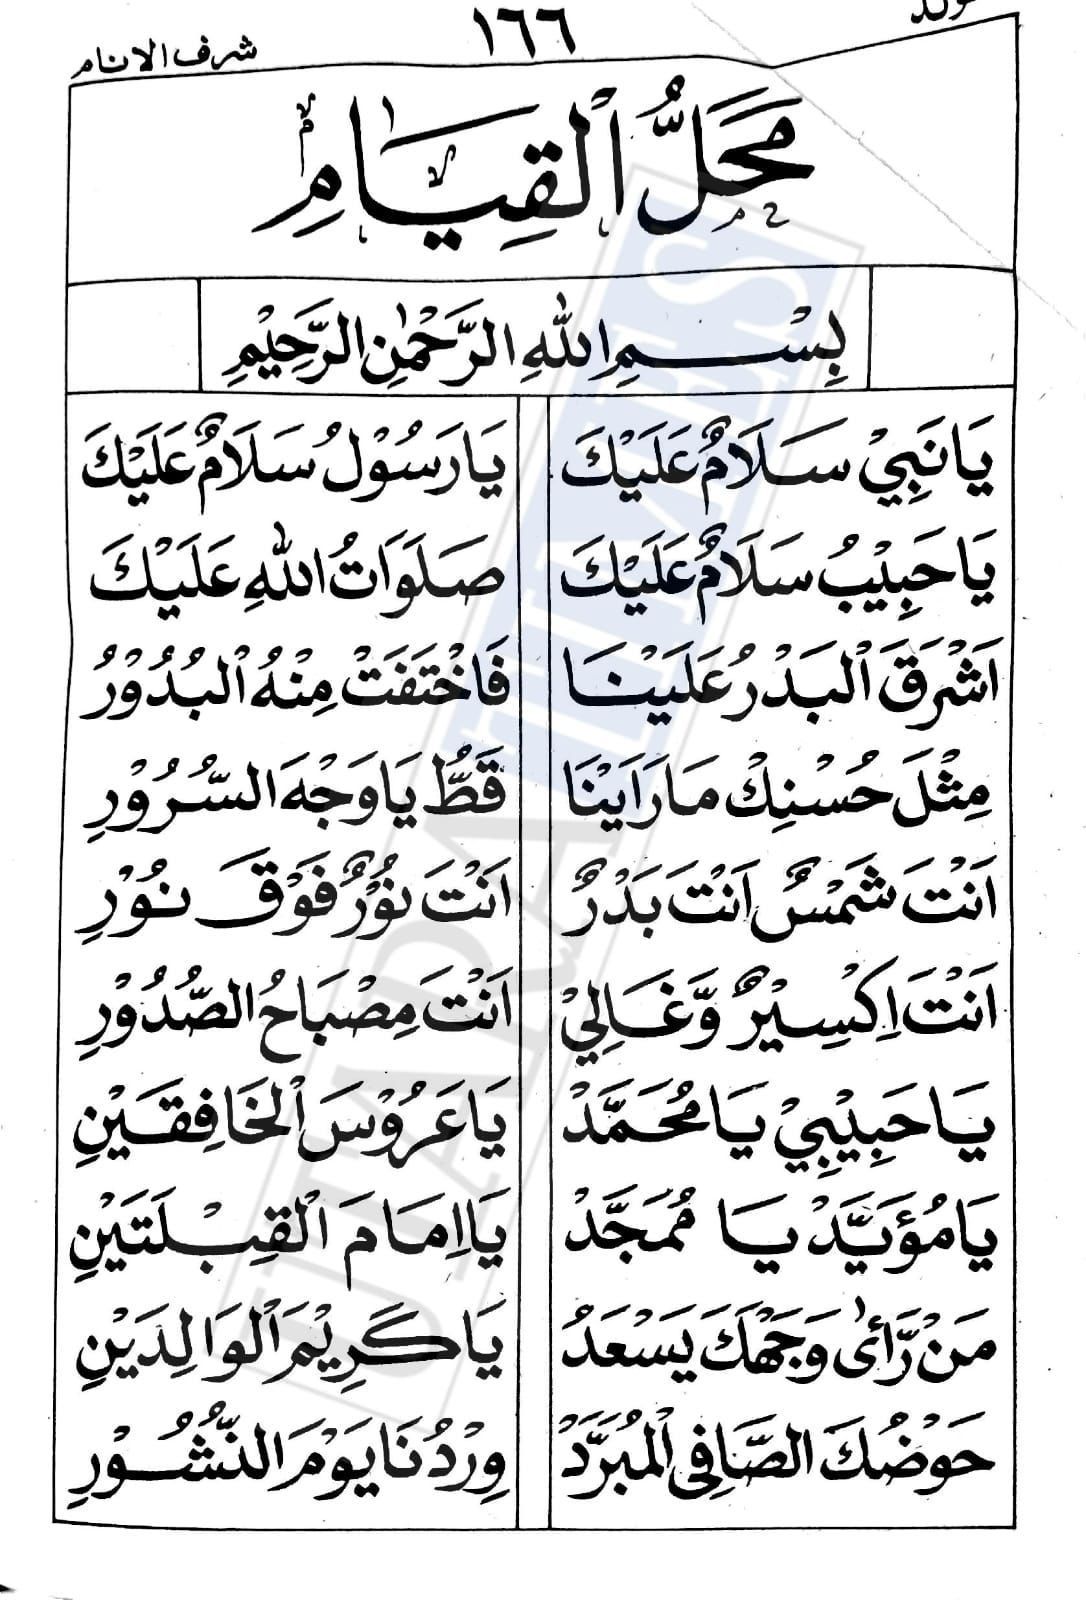 Bacaan Sholawat Mahalul Qiyam Lengkap Dalam Bahasa Arab Dan Latin Versi